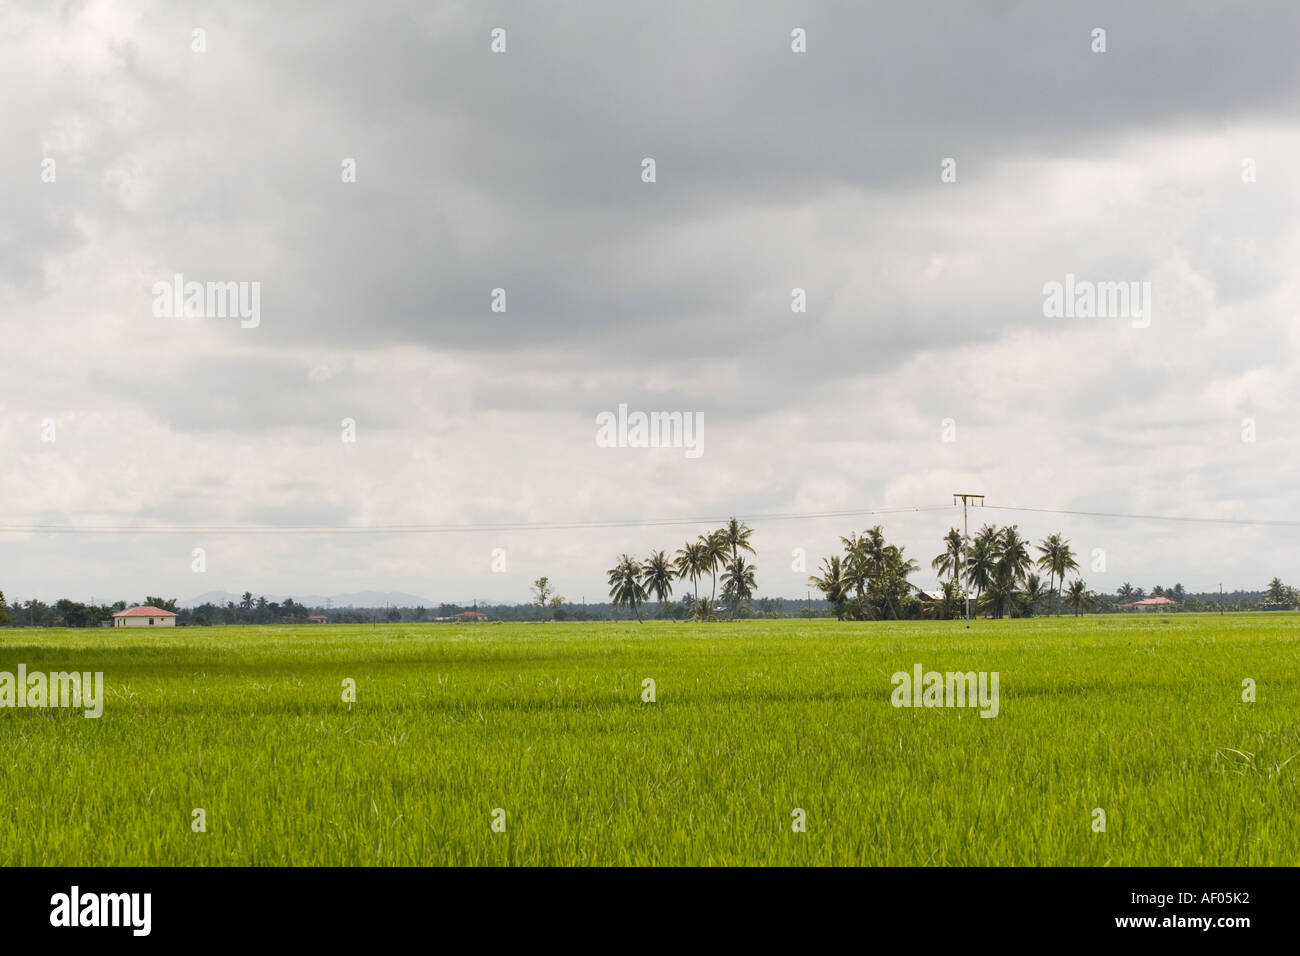 Padi fields in Sekinchan, Malaysia Stock Photo